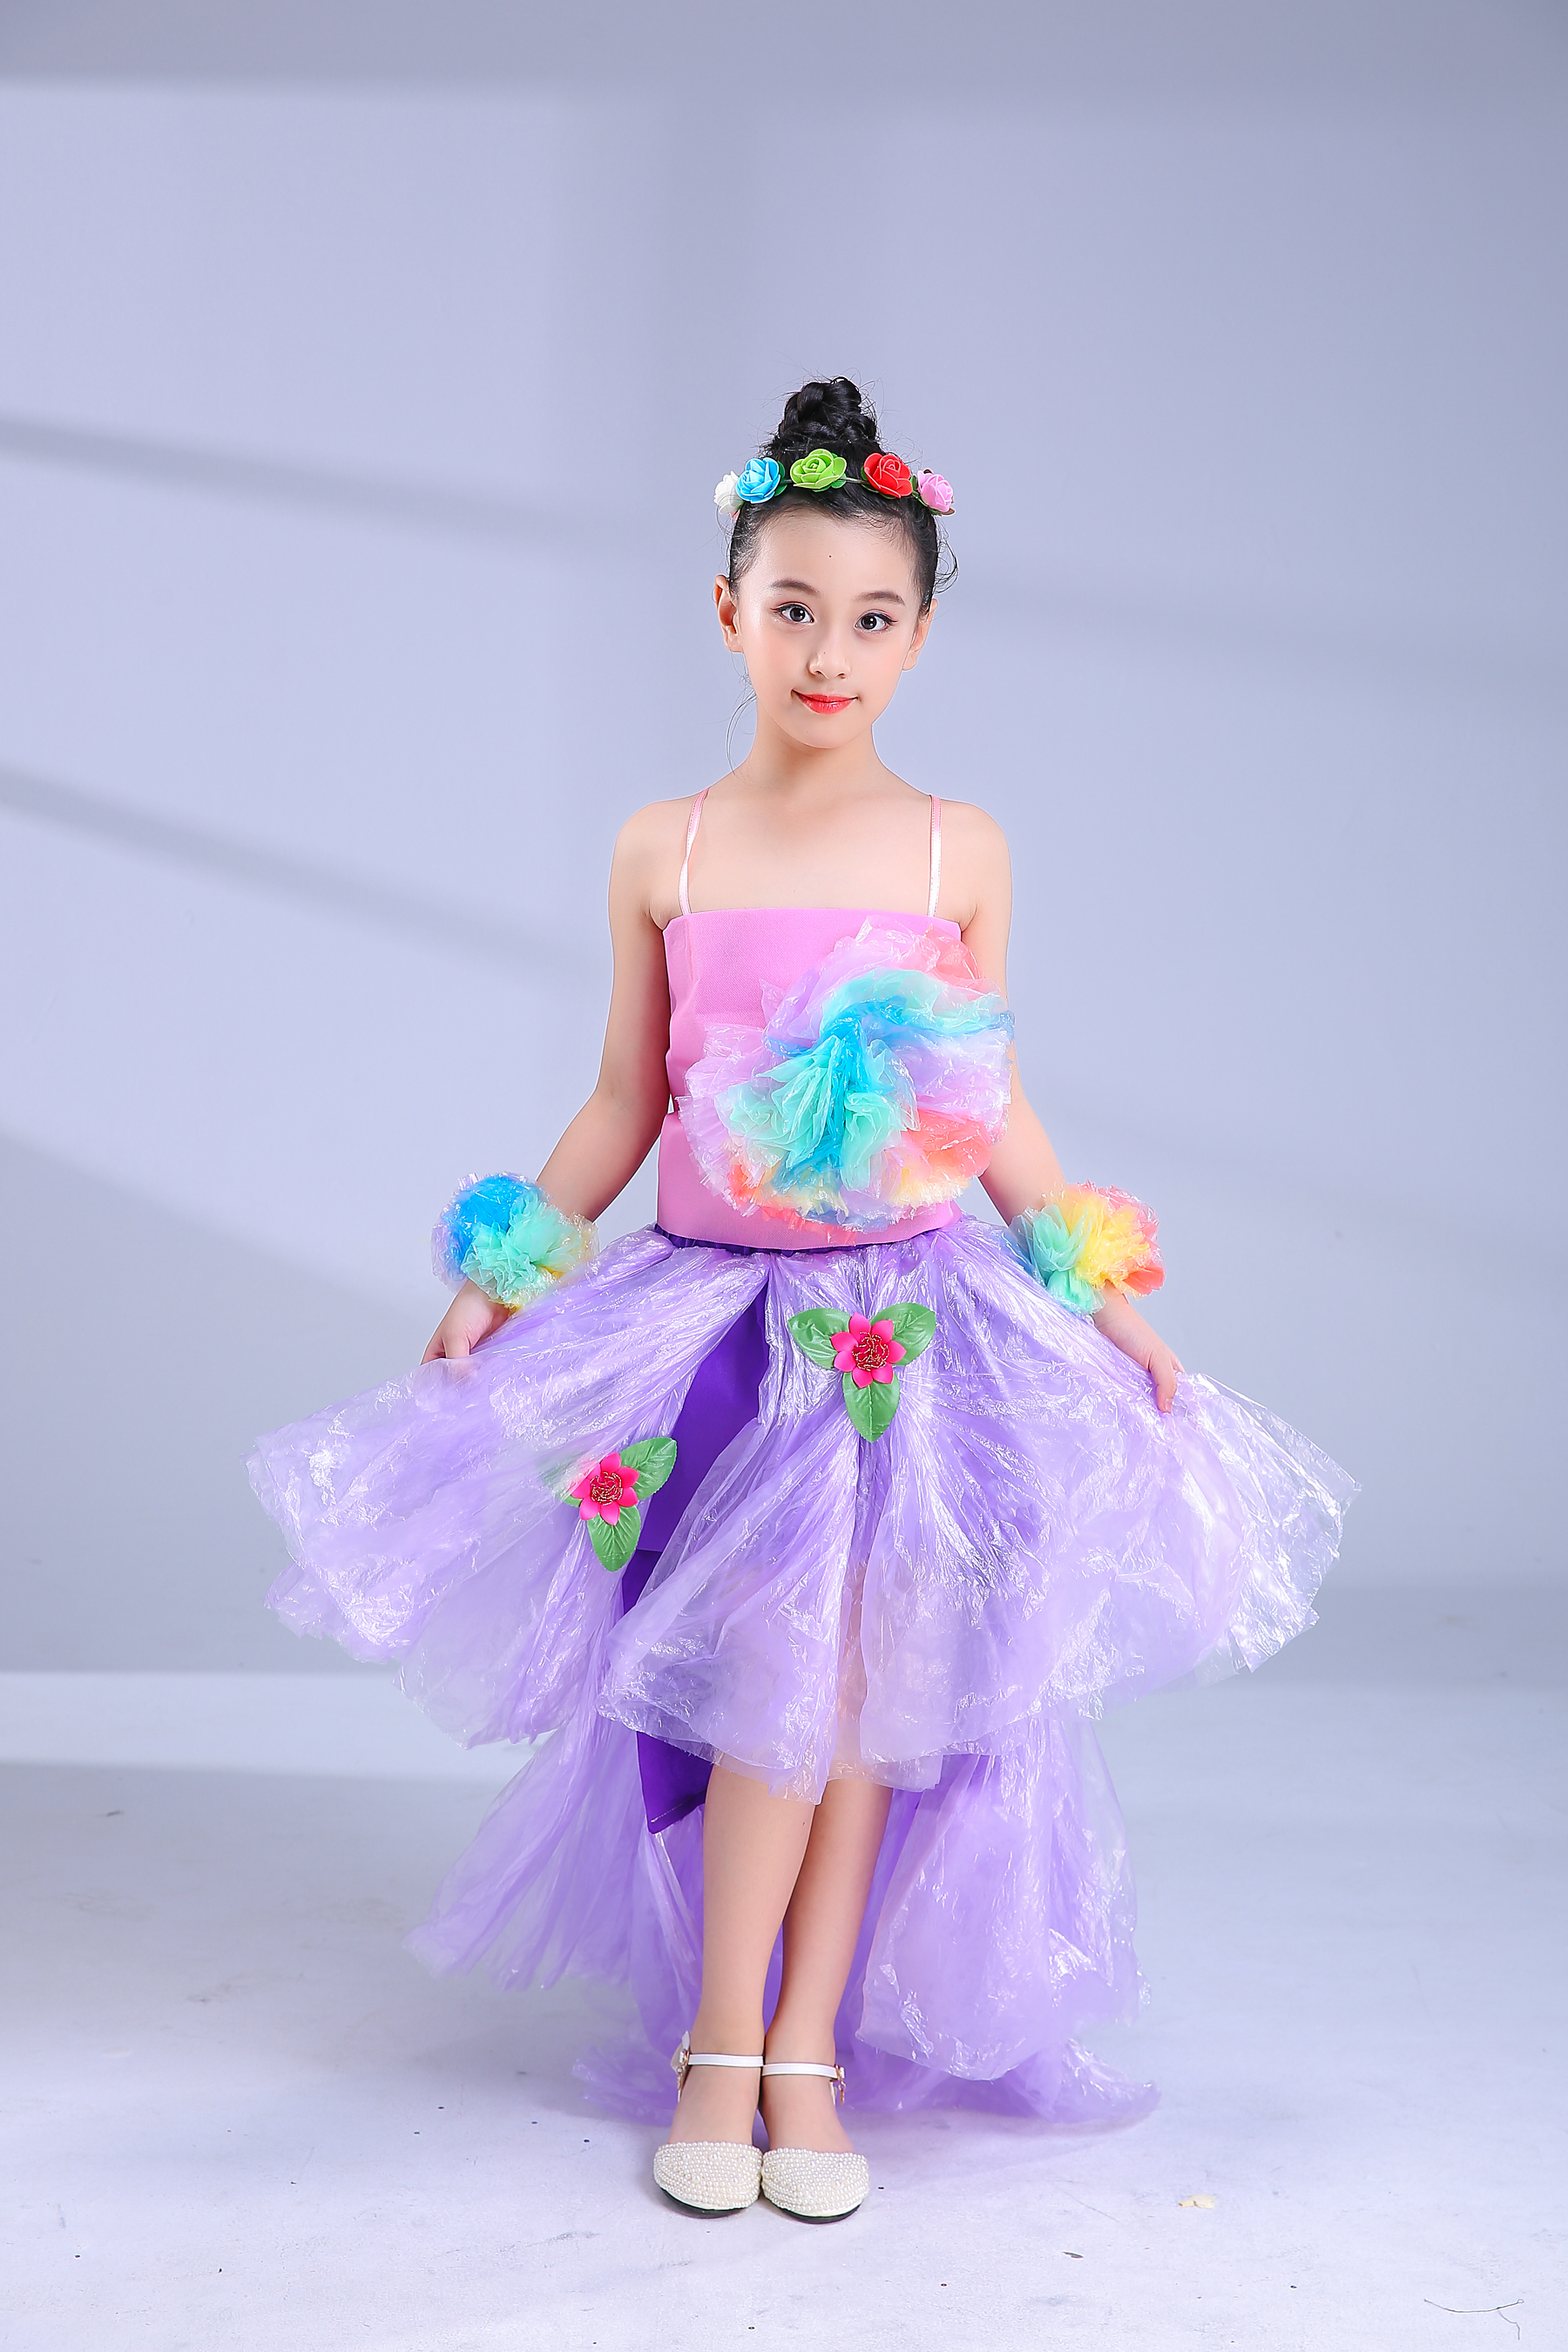 新品环保服装儿童时装秀幼儿亲子活动创意舞台走秀手工制作演出服